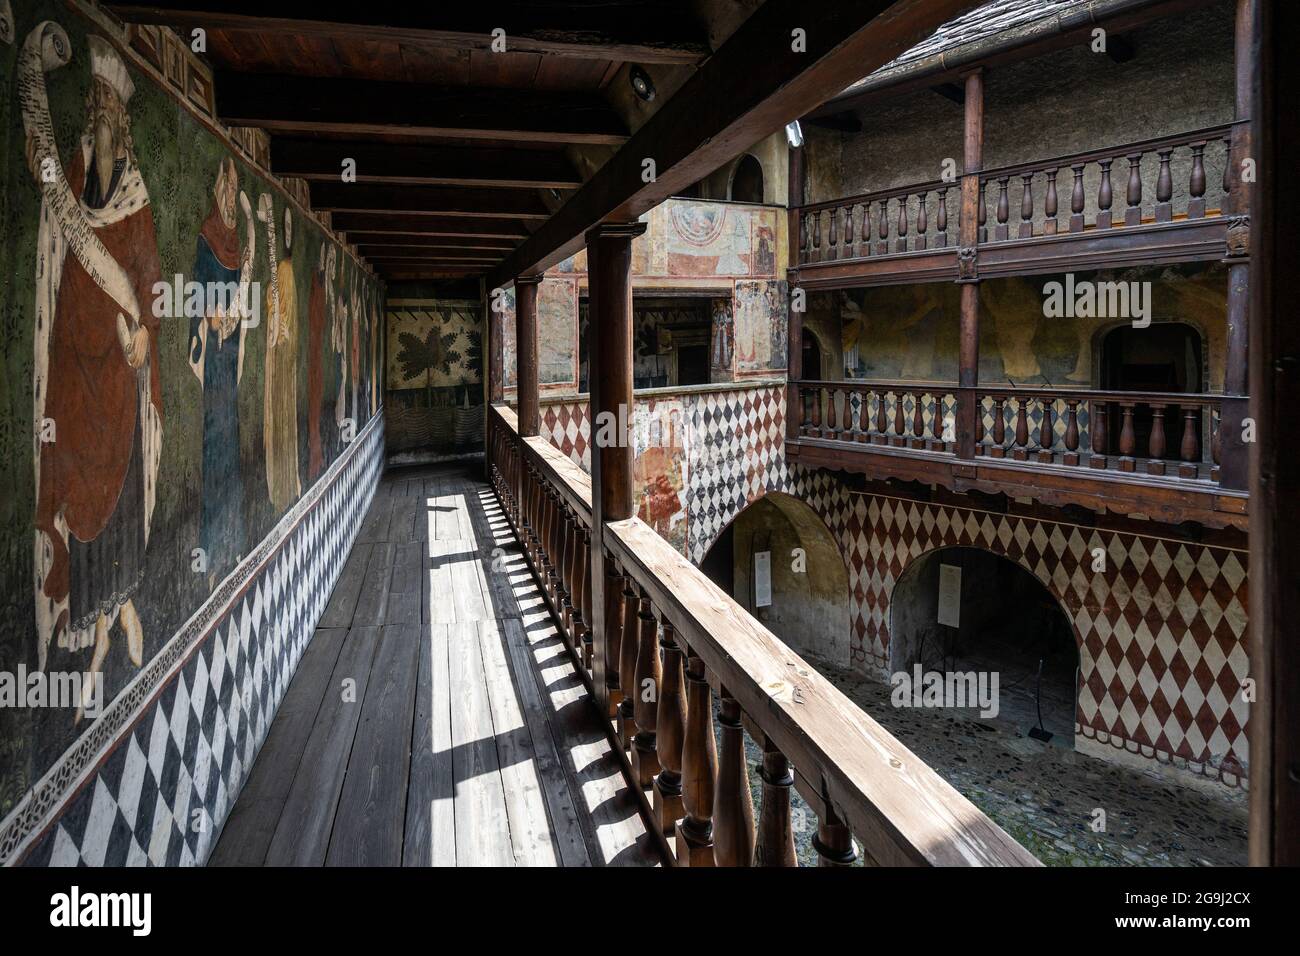 Cortile interno del Castello di Fenis con affreschi medievali che decorano le pareti. Fenis, Valle d'Aosta, Italia, giugno 2021 Foto Stock